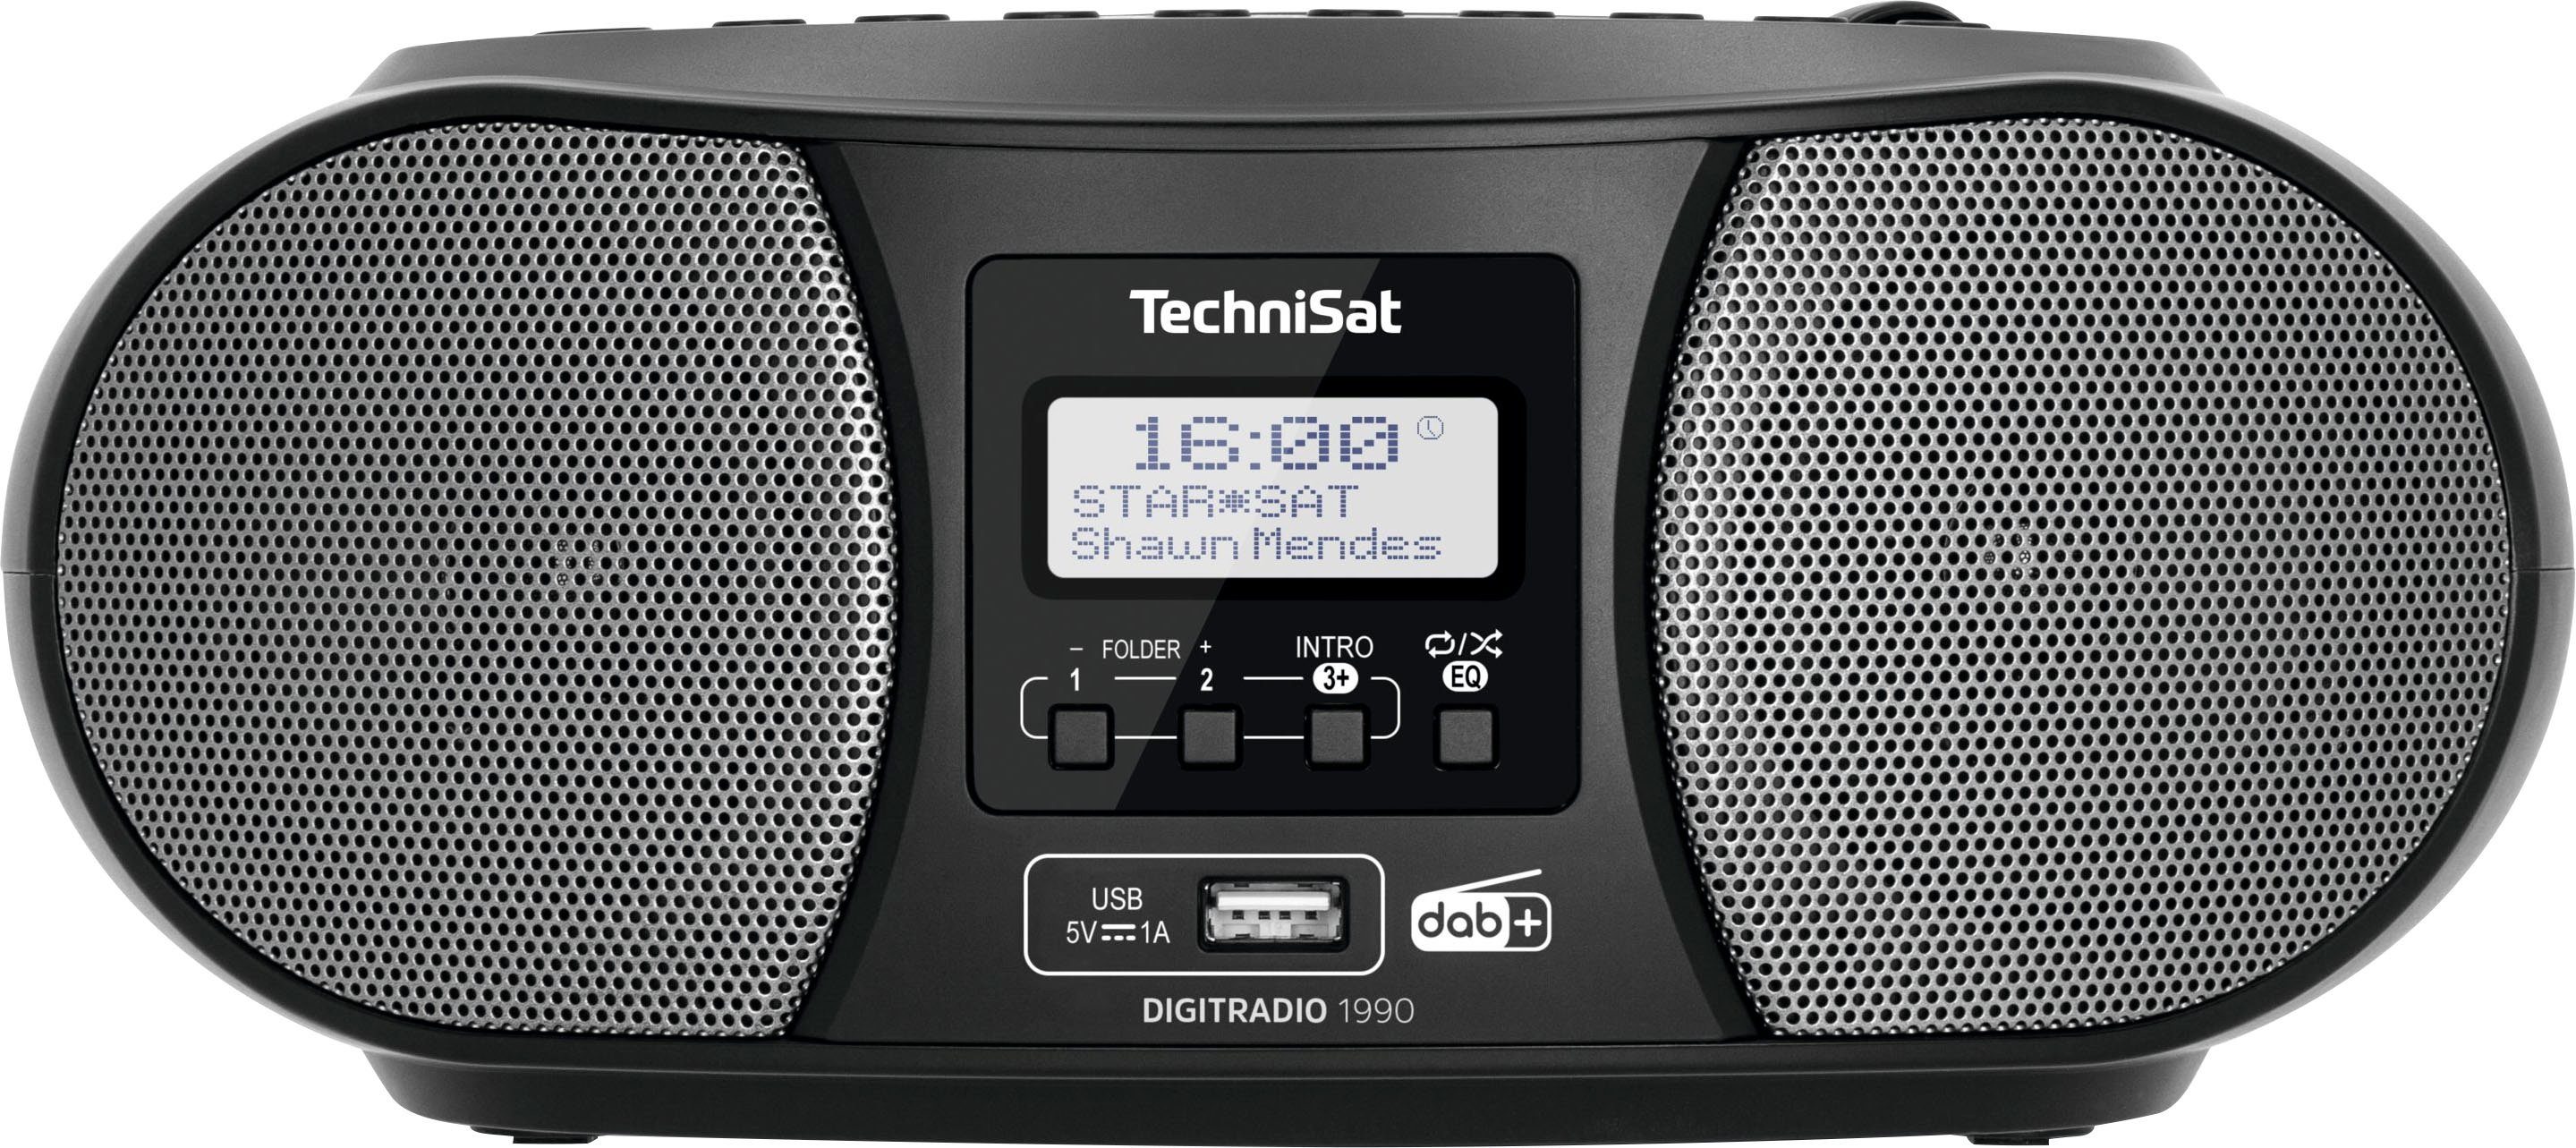 TechniSat Digitradio 1990 Stereo- CD-Player, FM-Tuner, Boombox Bluetooth, USB, DAB+, UKW, Batteriebetrieb schwarz (DAB), (Digitalradio mit möglich)